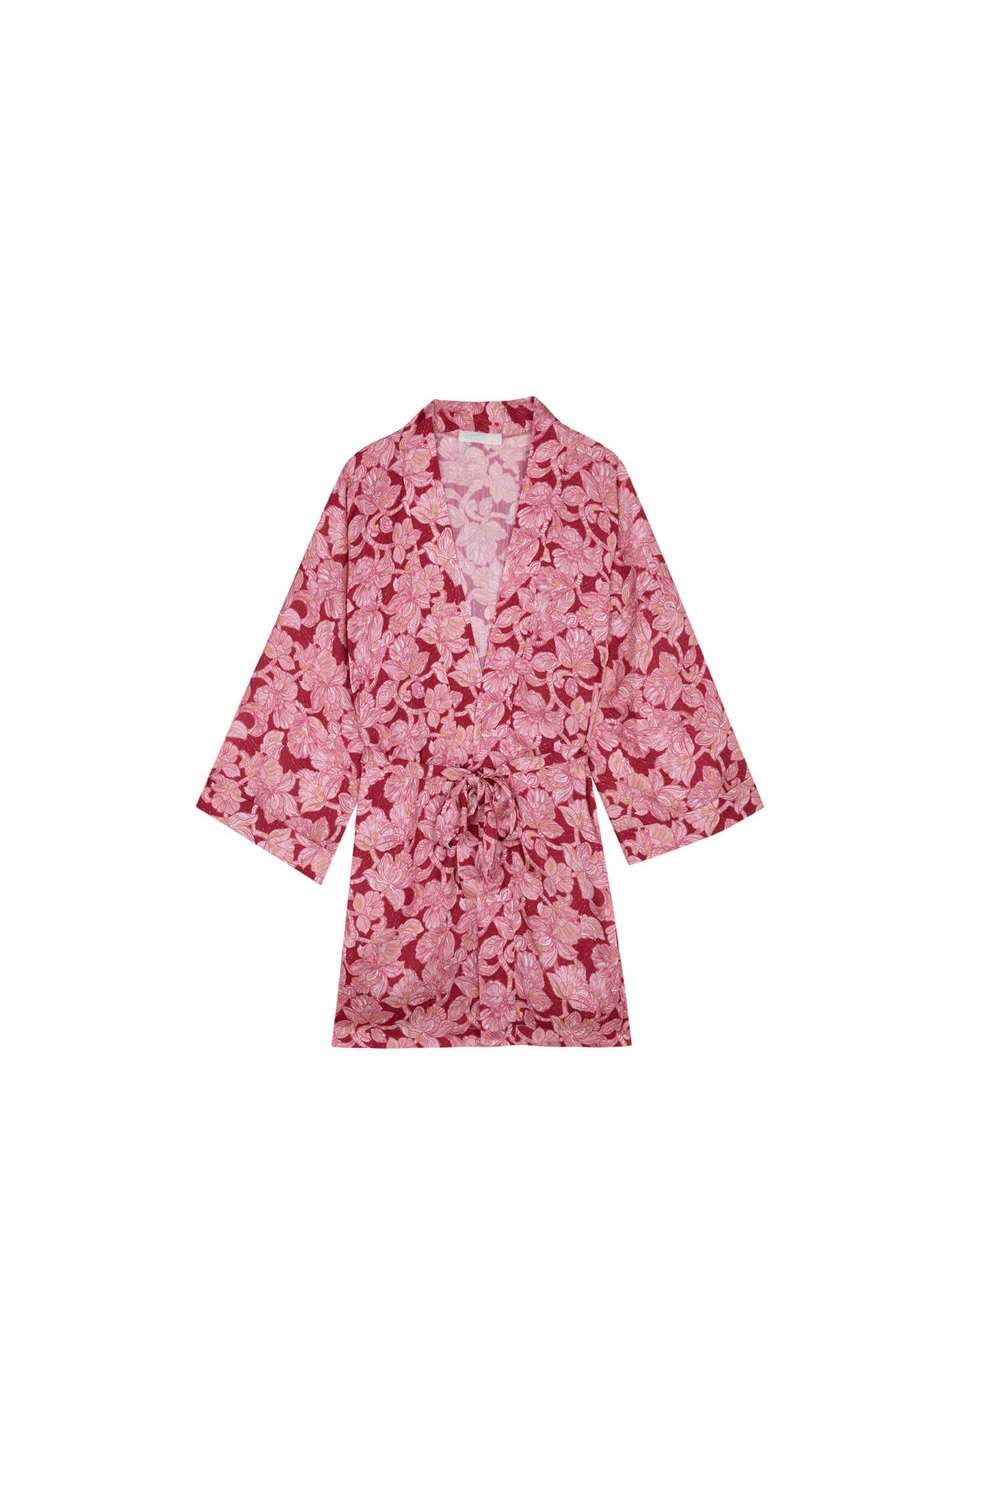 regalos para el dia de la madre kimono rosa